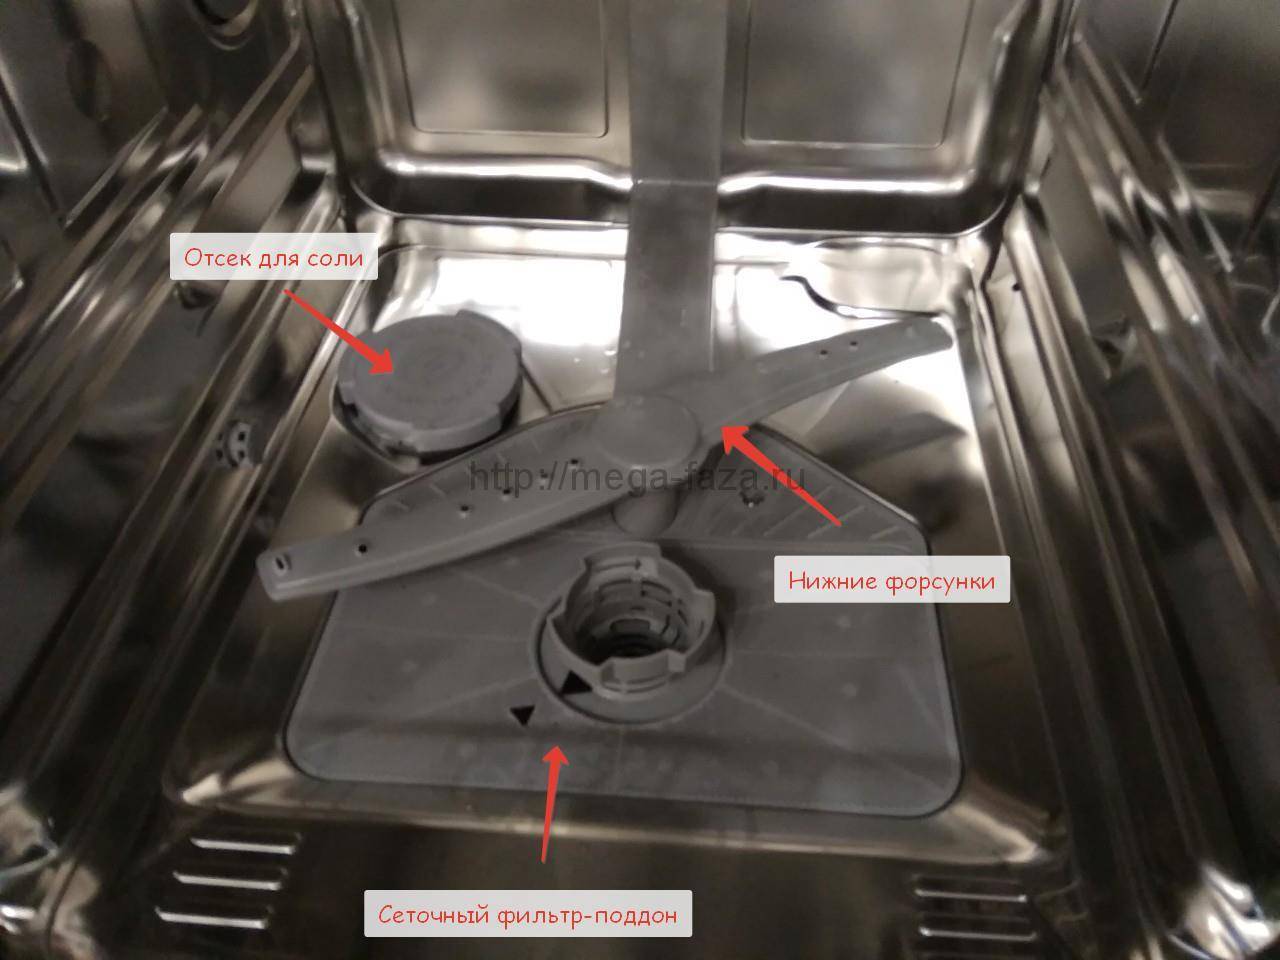 Почему посудомоечная машина плохо моет посуду: причины и ремонт неиспровности